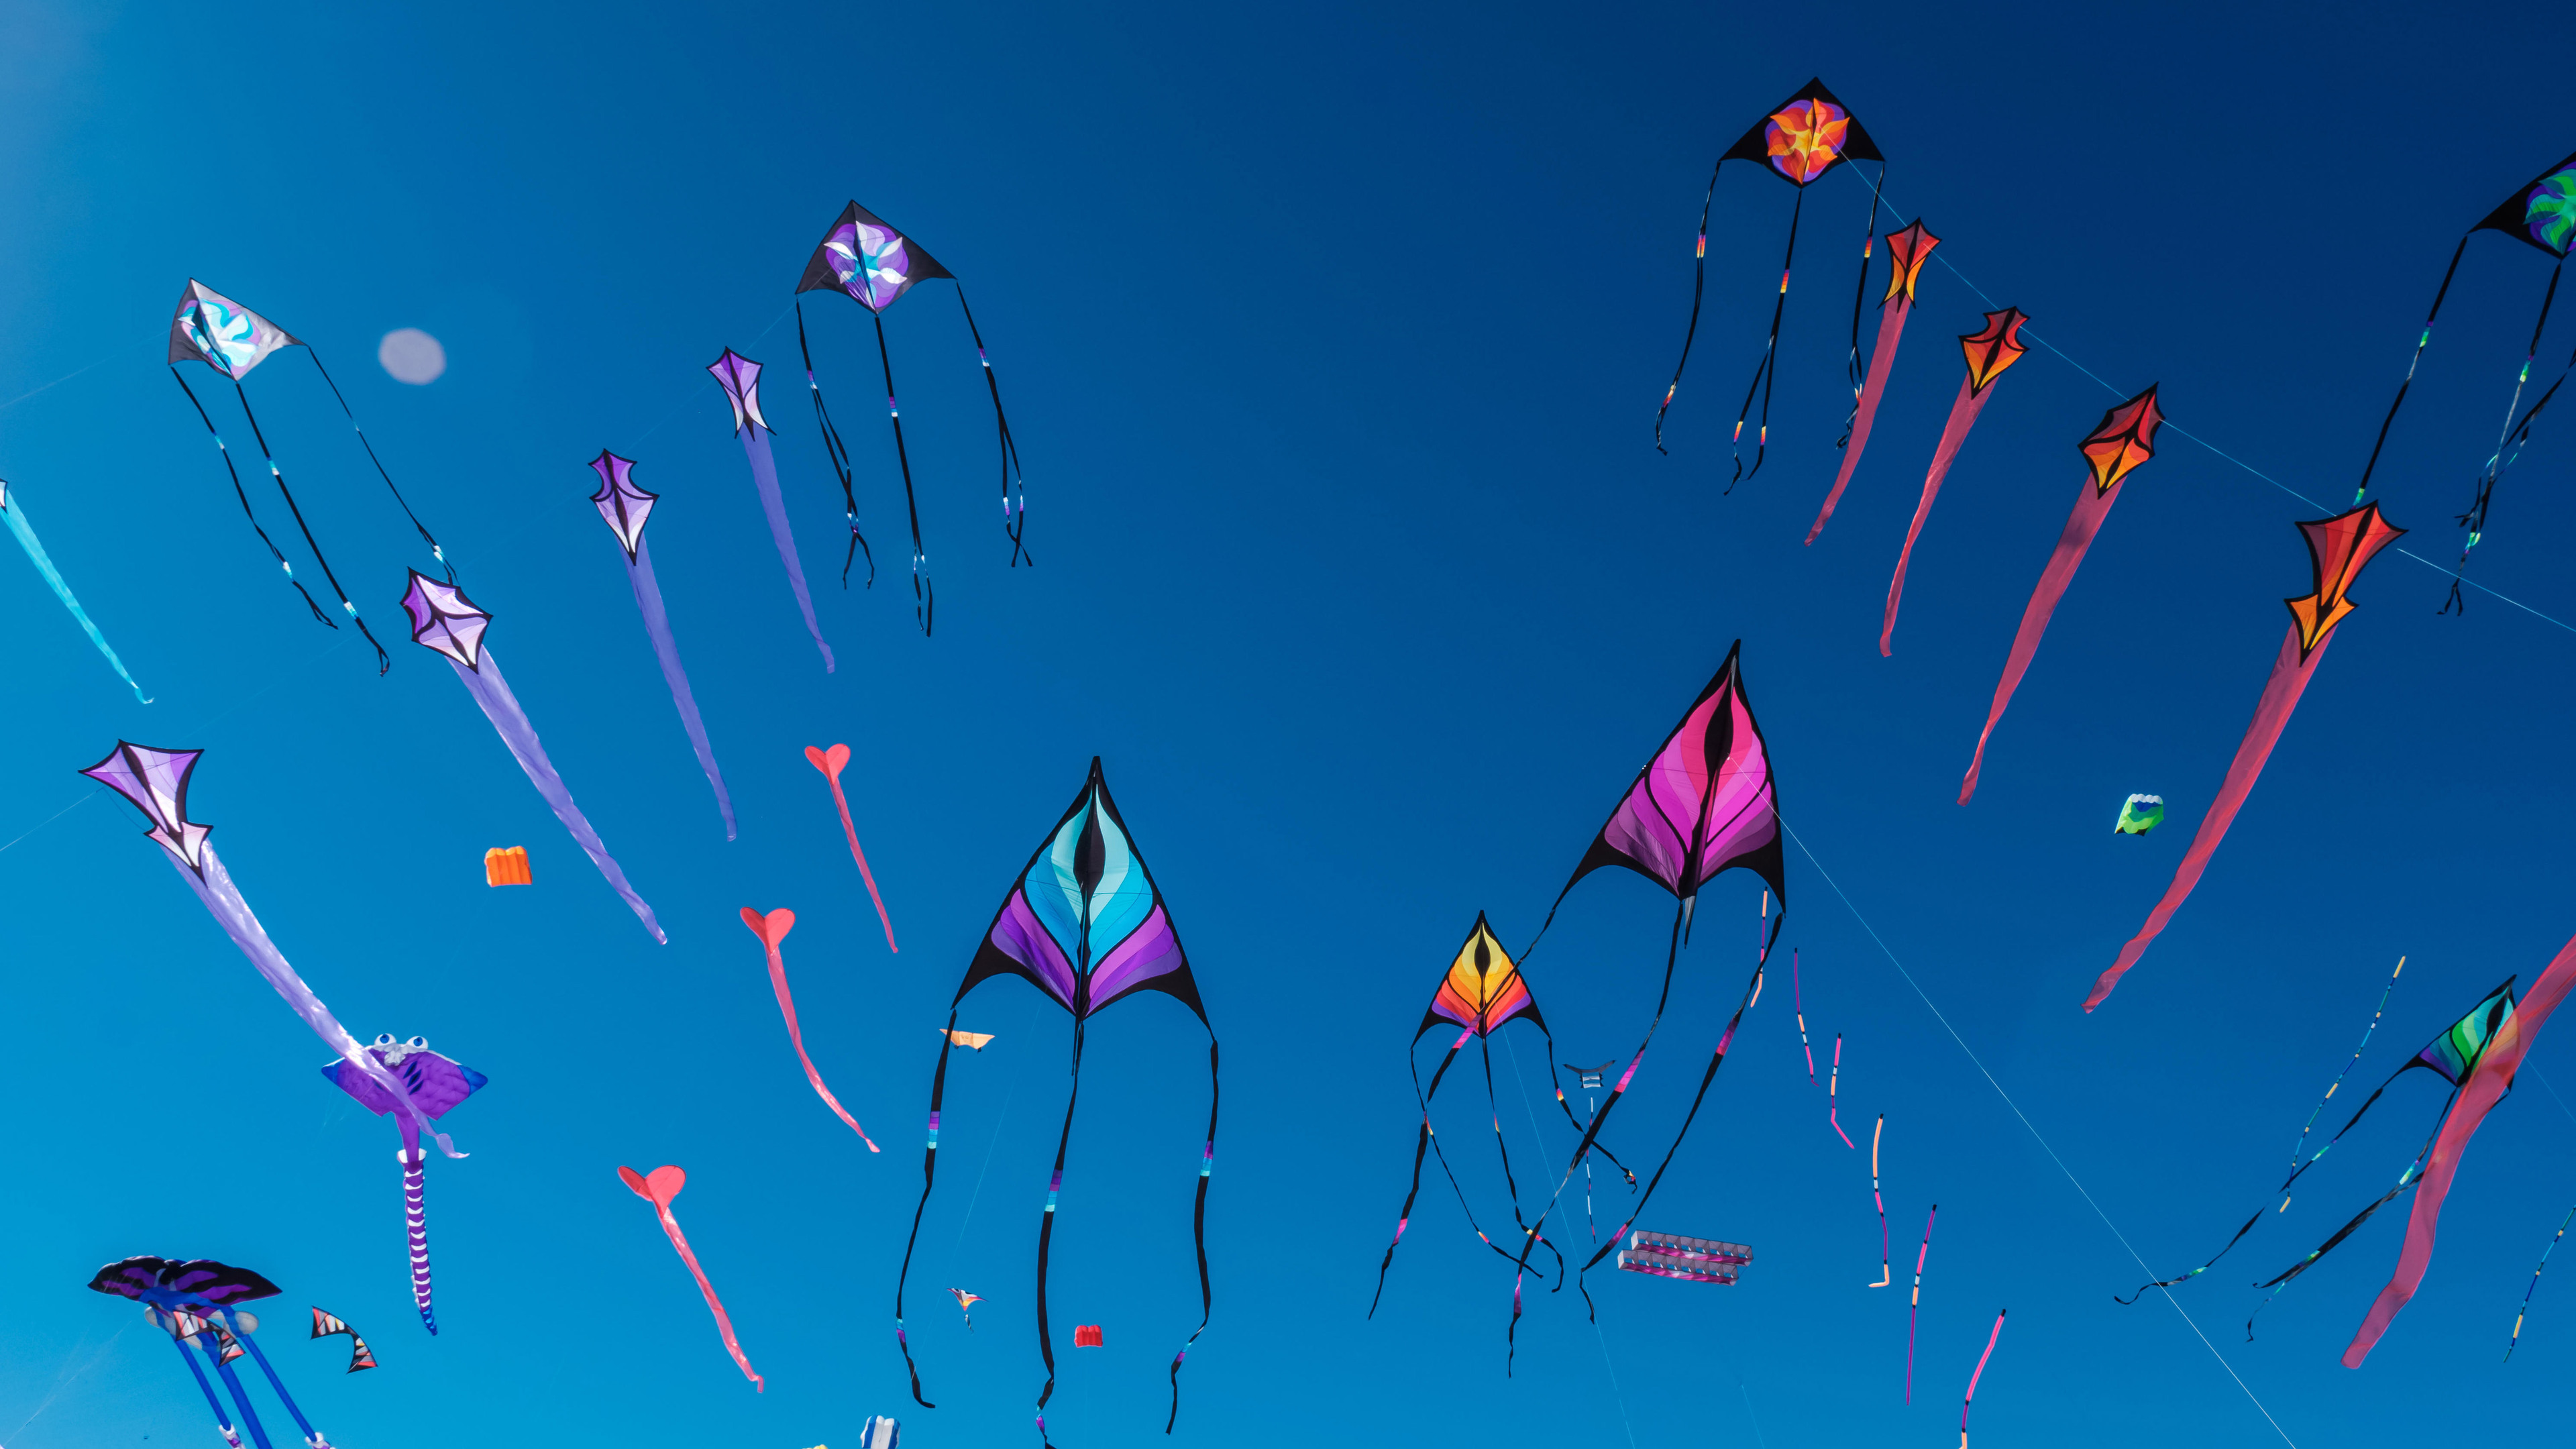 Adelaide International Kite Festival, Australia by Andrey Moisseyev